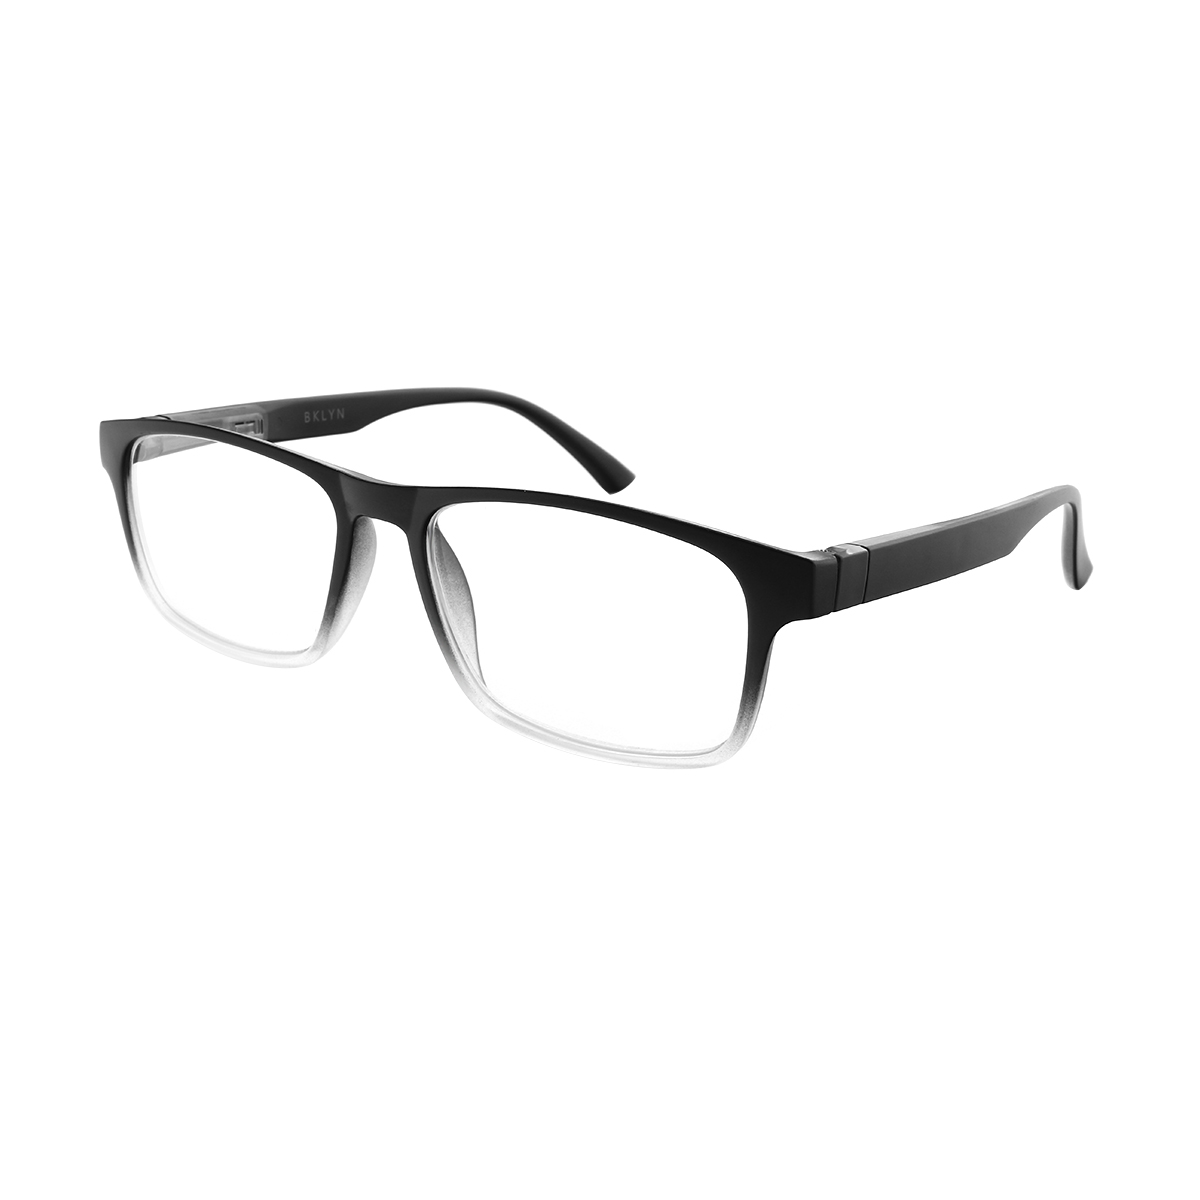 Solon - Rectangle Black Reading Glasses for Men & Women